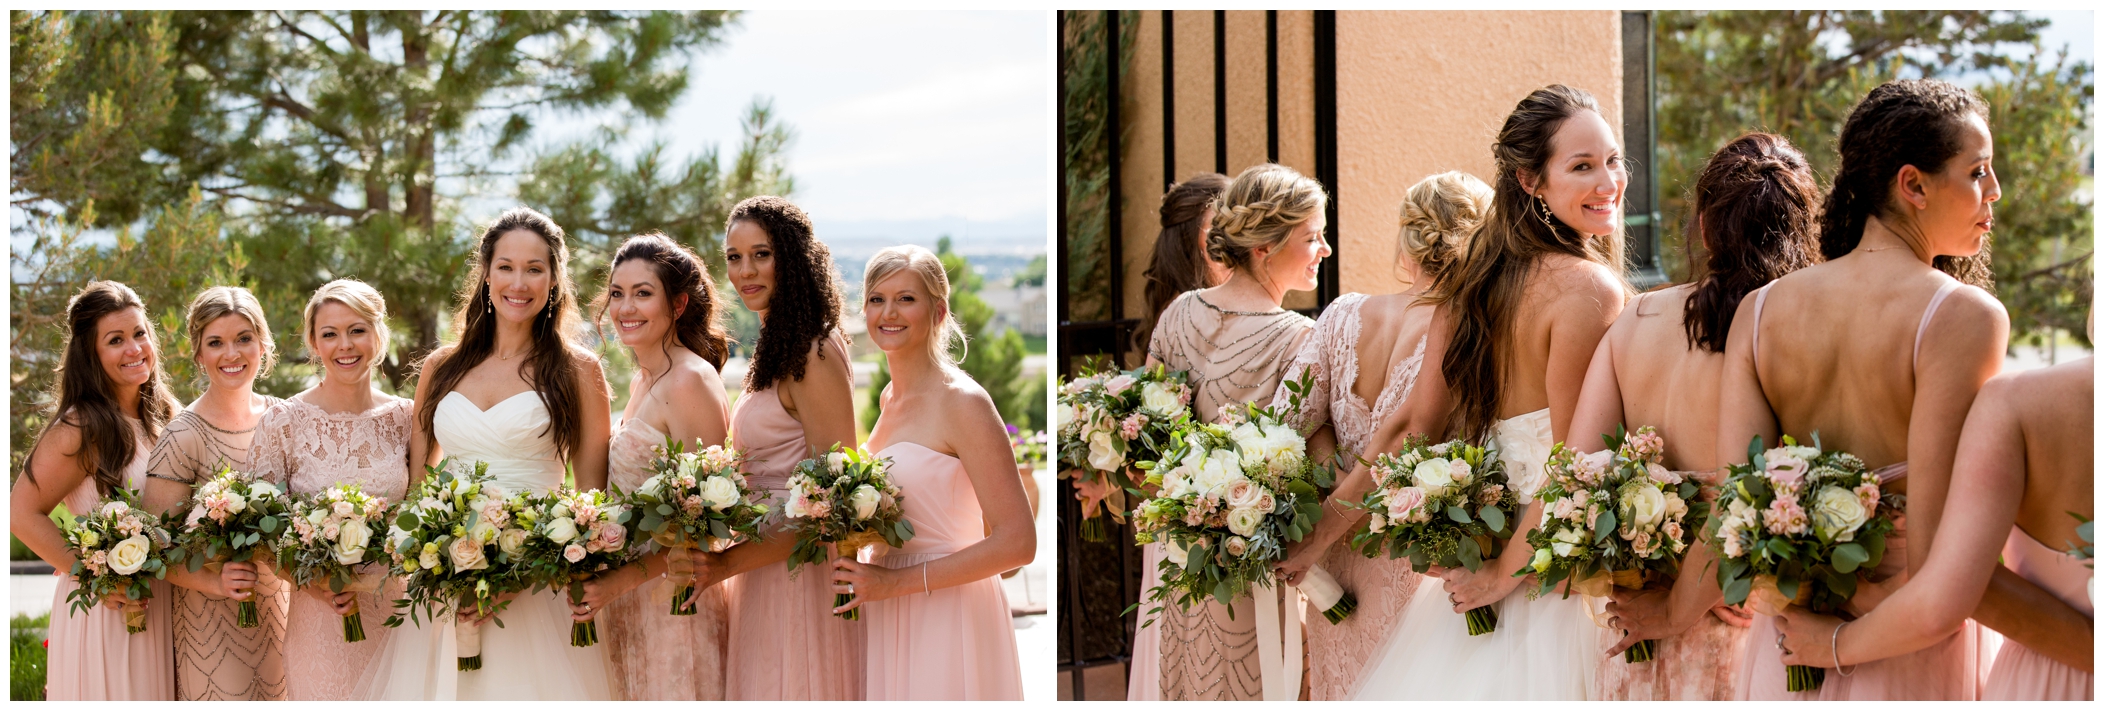 bridesmaids in pink at Colorado summer wedding 